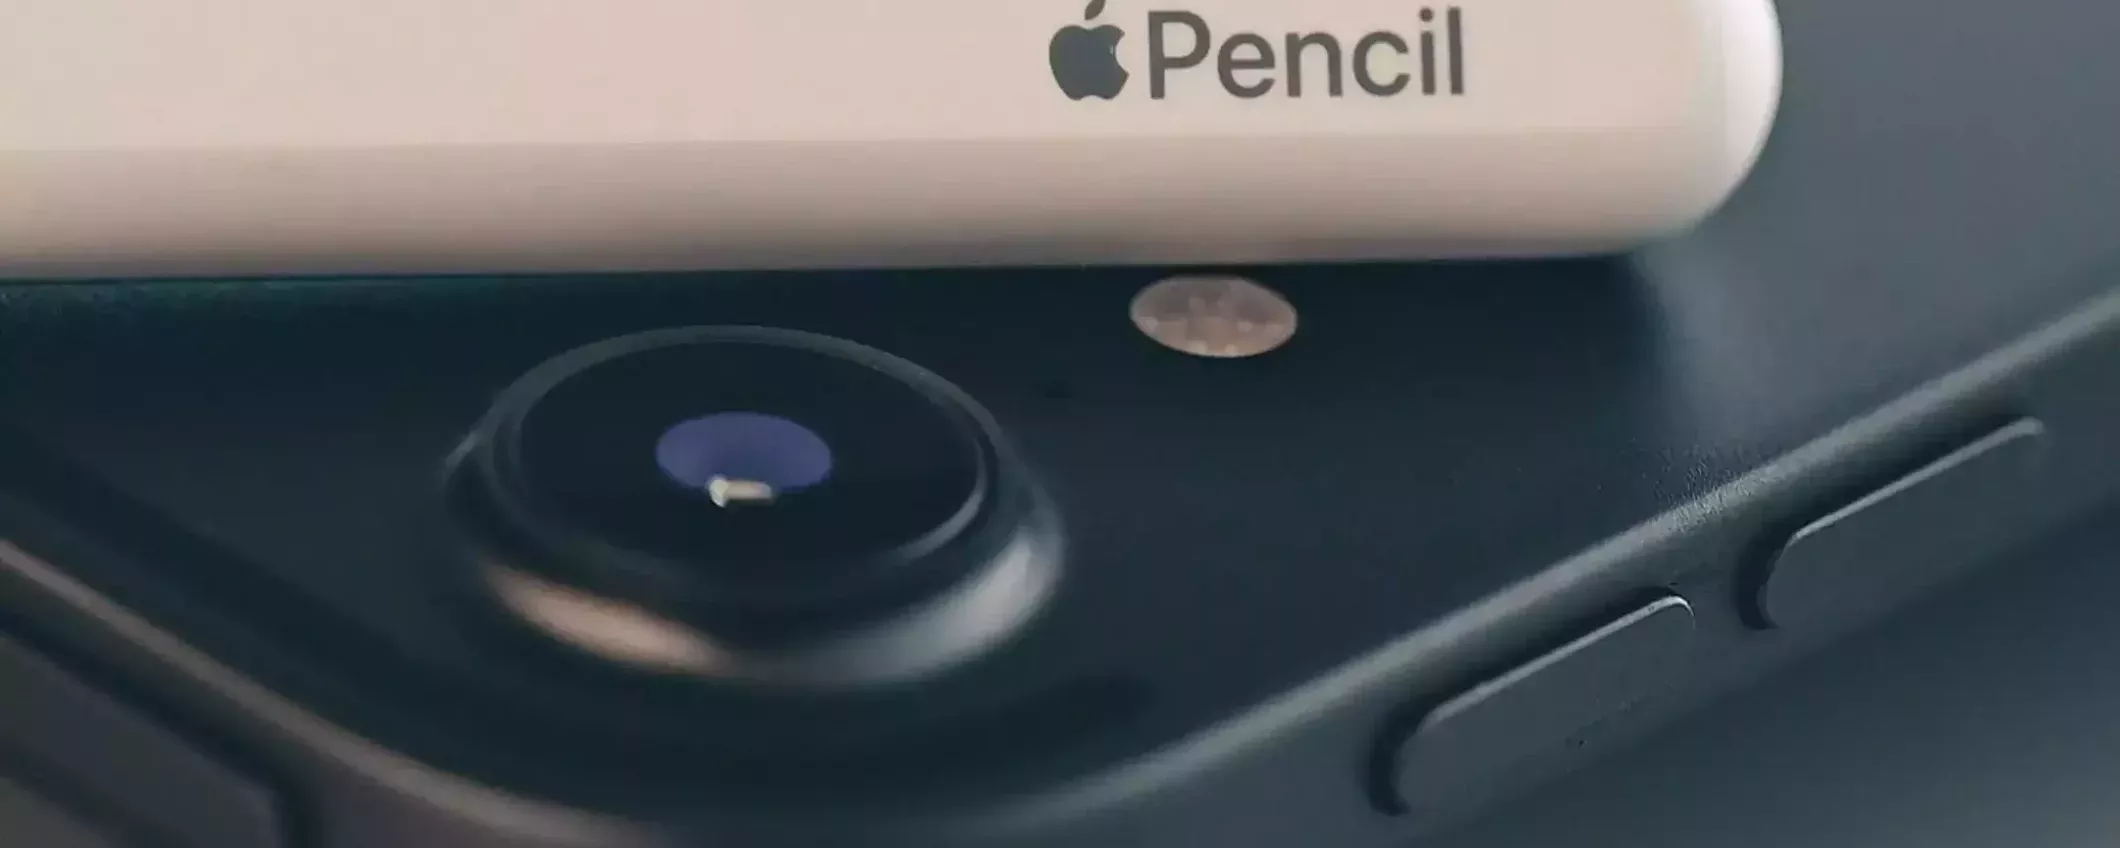 Apple Pencil 3 sta per arrivare e sarà RIVOLUZIONARIA